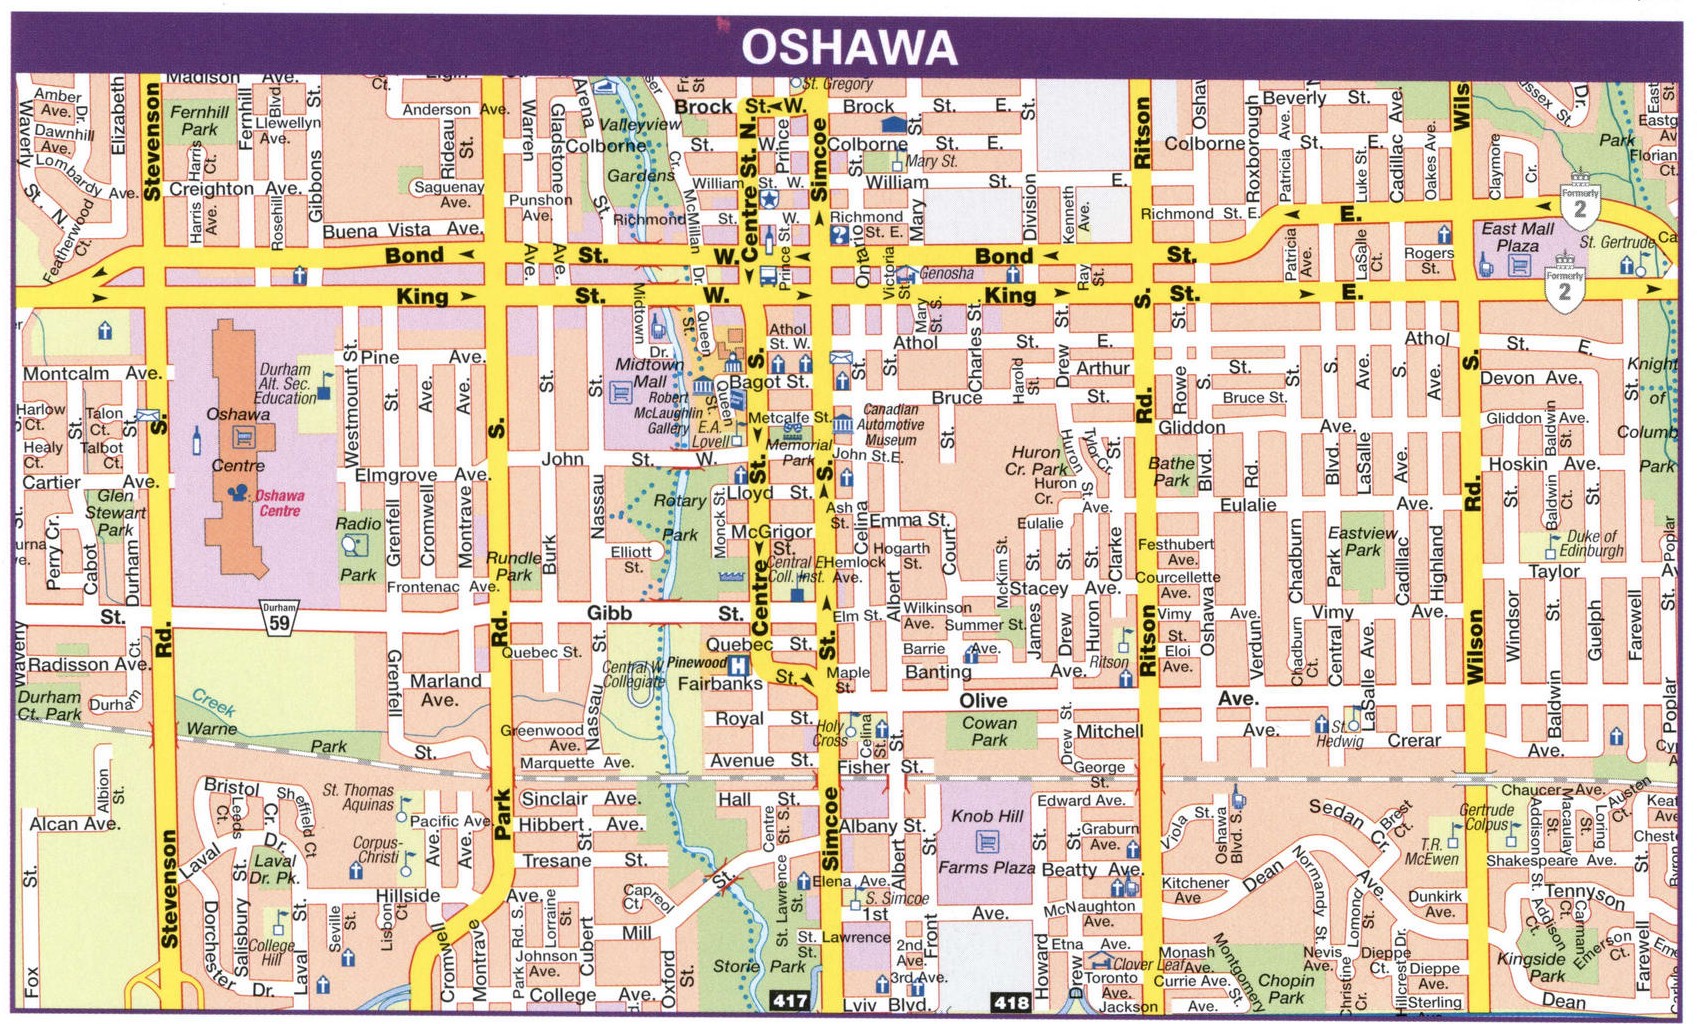 Oshawa road map